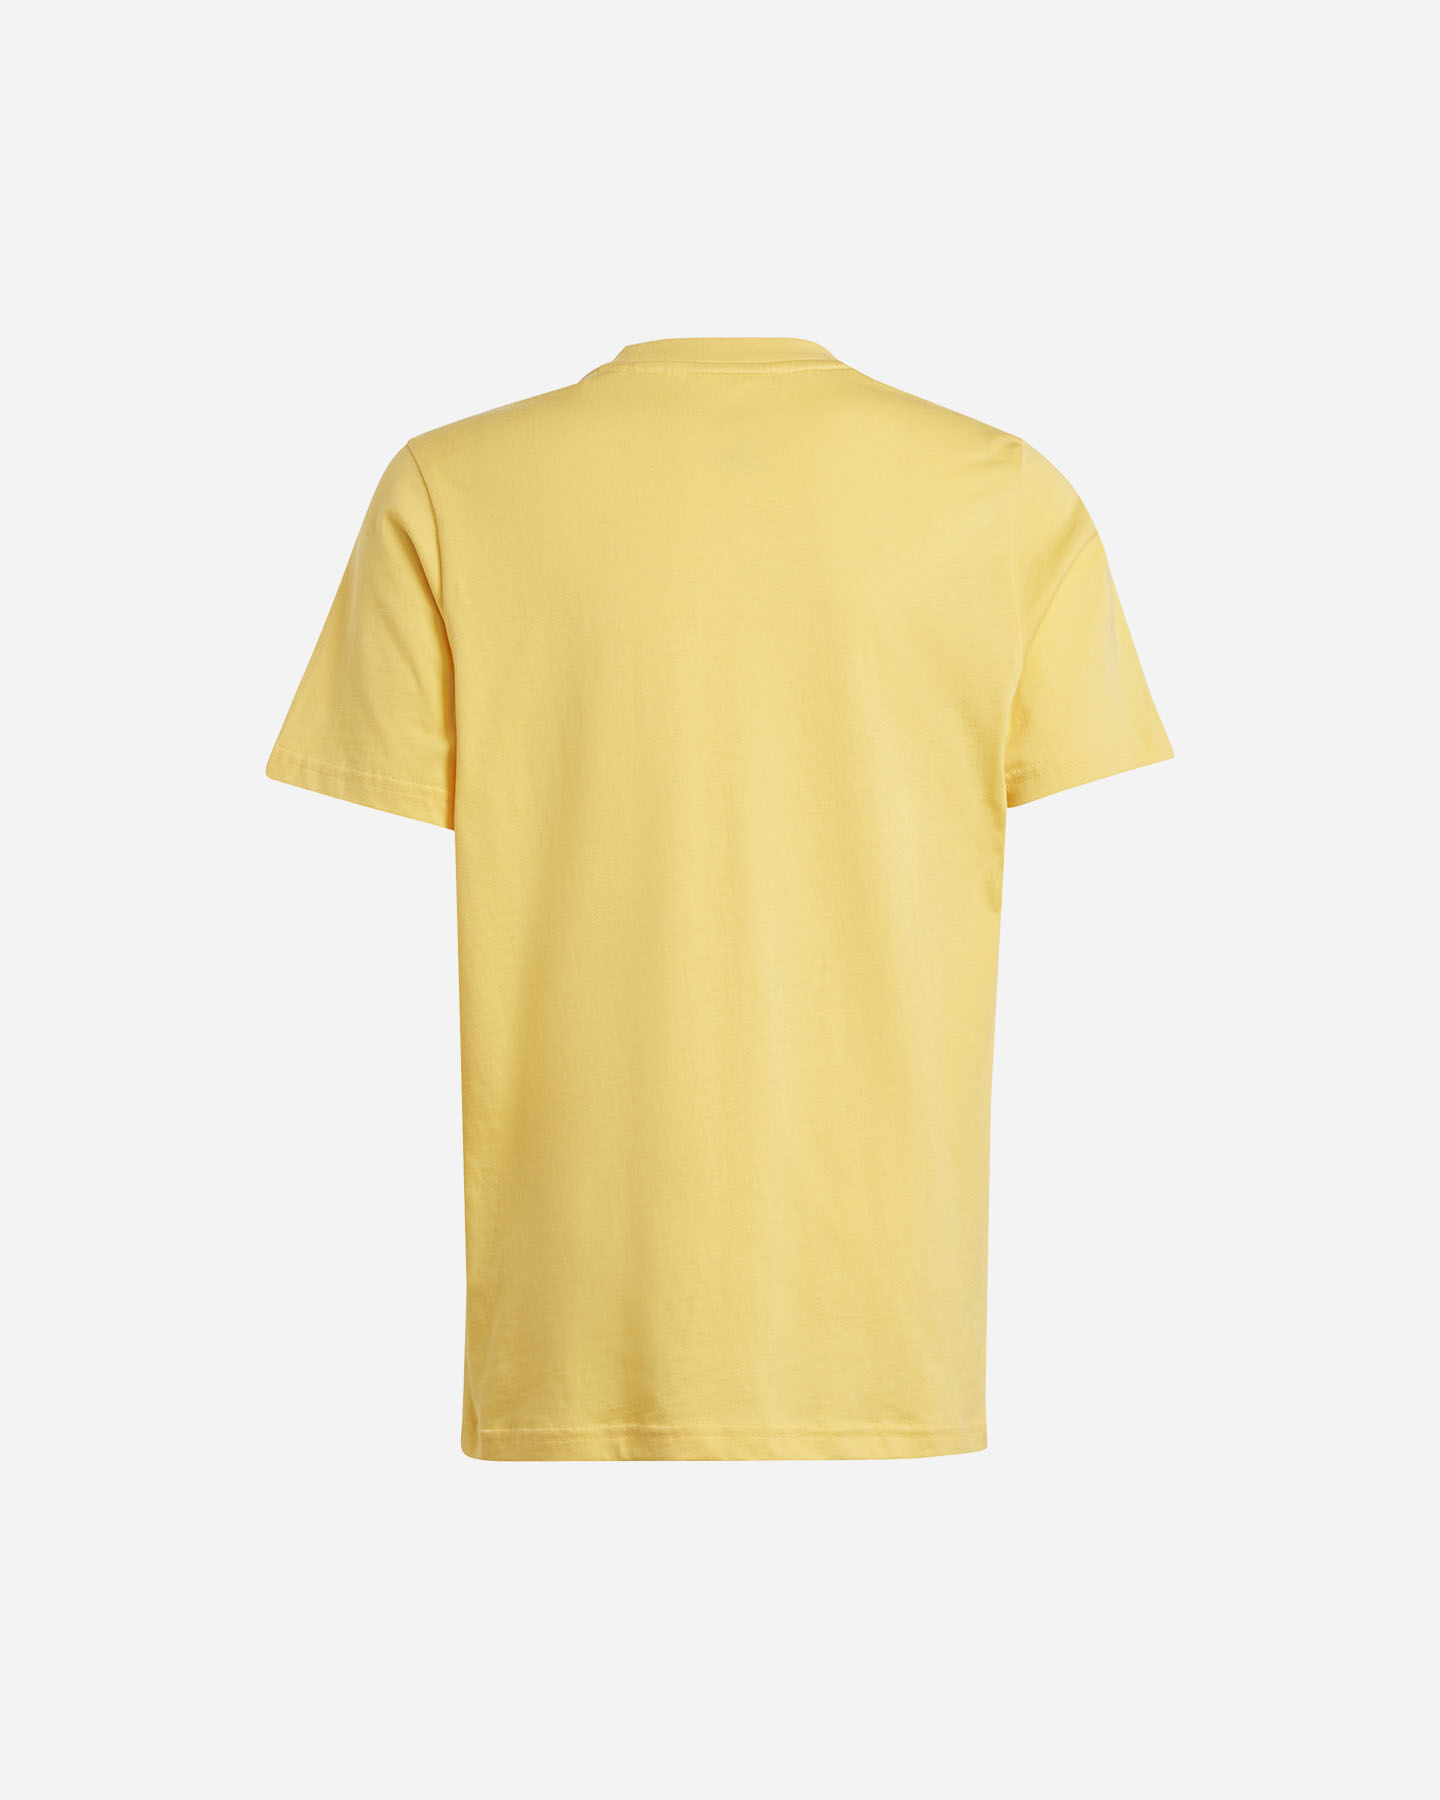  T-Shirt ADIDAS BOY BIG LOGO JR S5656415|UNI|910A scatto 1